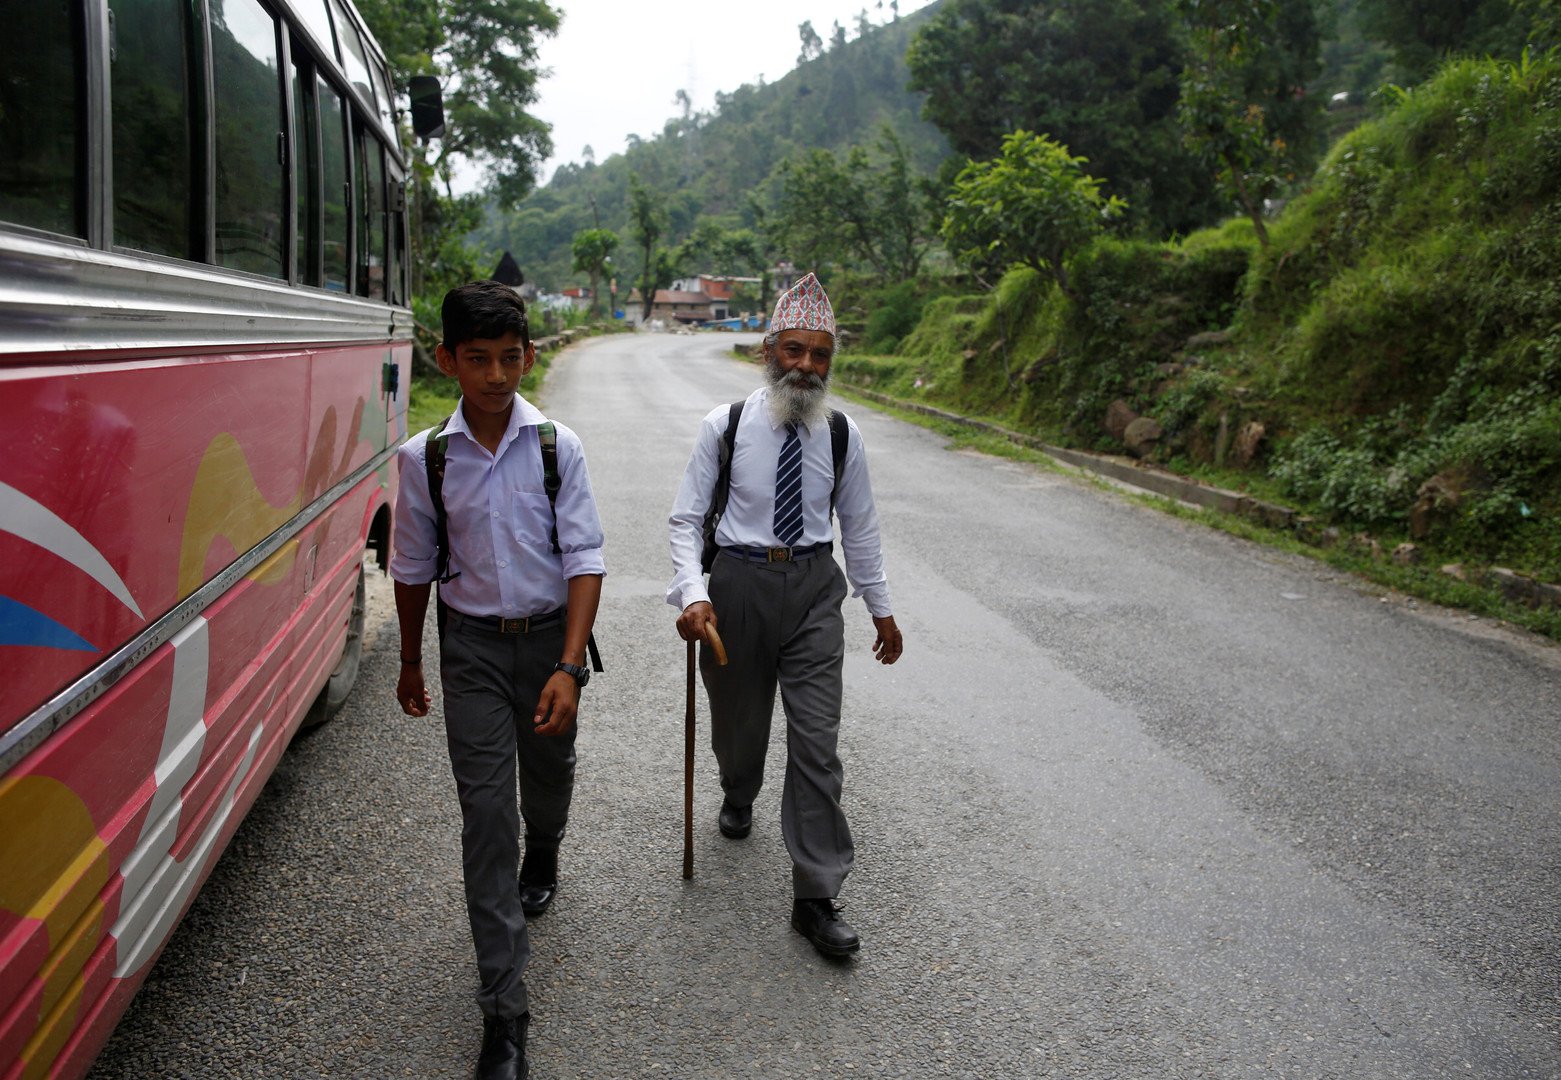 أكبر تلميذ في نيبال عمره 68 عاما